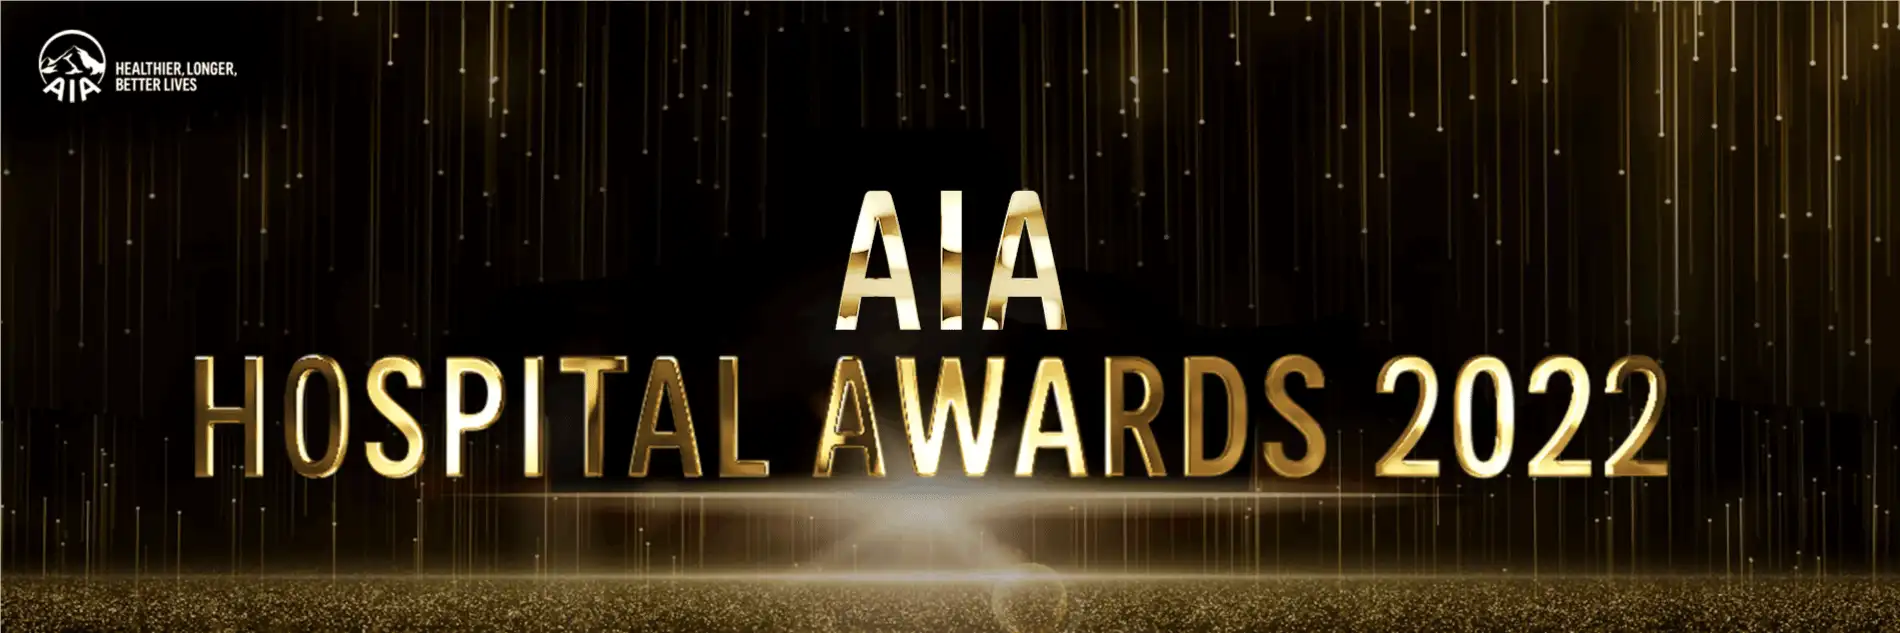 AIA Hospital Award 2022 รางวัลโรงพยาบาลคู่สัญญายอดเยี่ยมของ AIA HealthServ